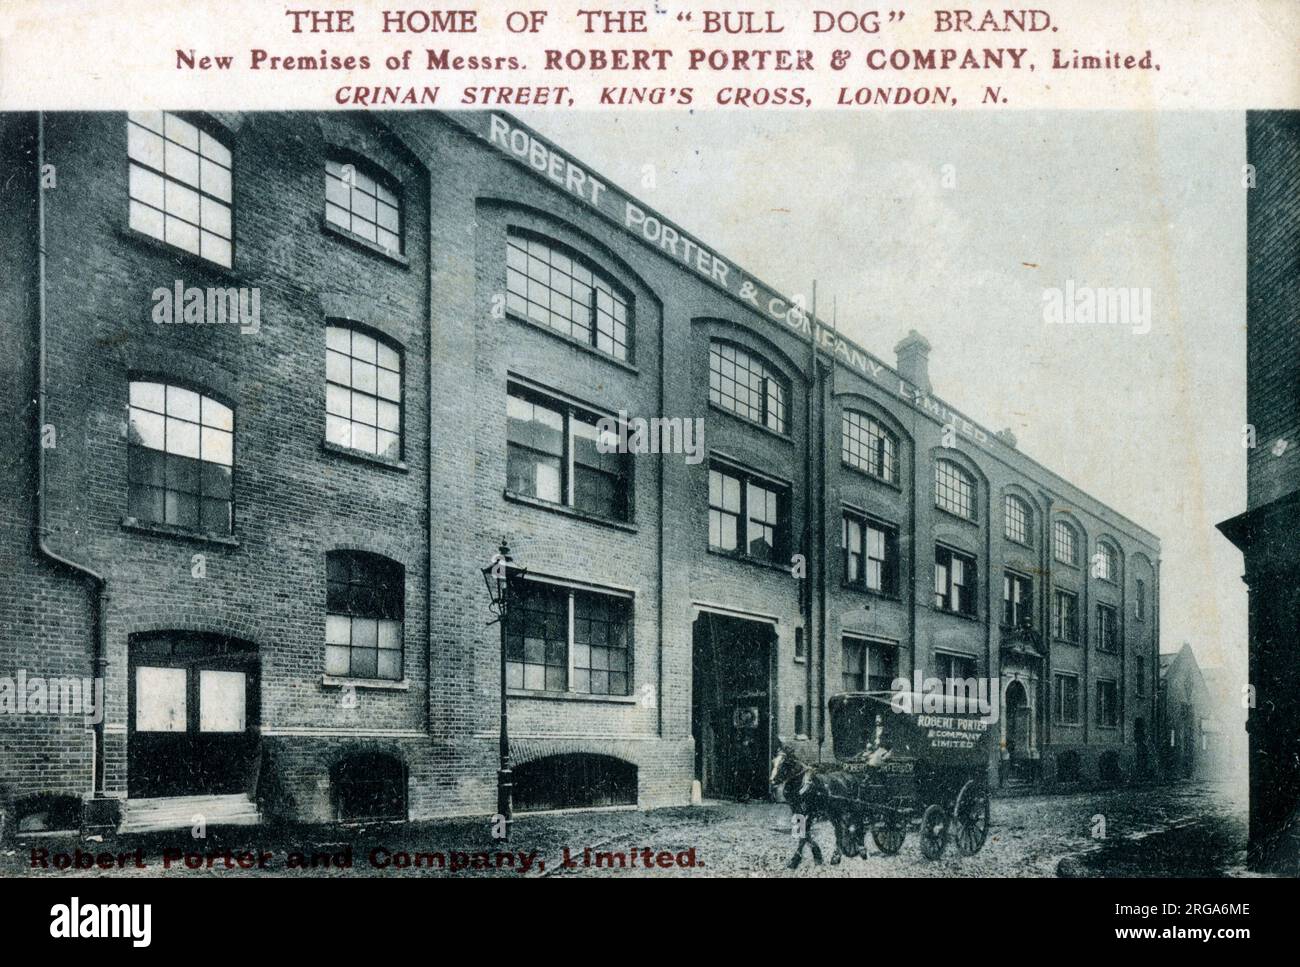 La nuova sede della Sig.ra Robert Porter & Company Ltd. - Crinan Street, King's Cross, Londra. Birrifici famosi per il loro marchio Bull Dog. Foto Stock